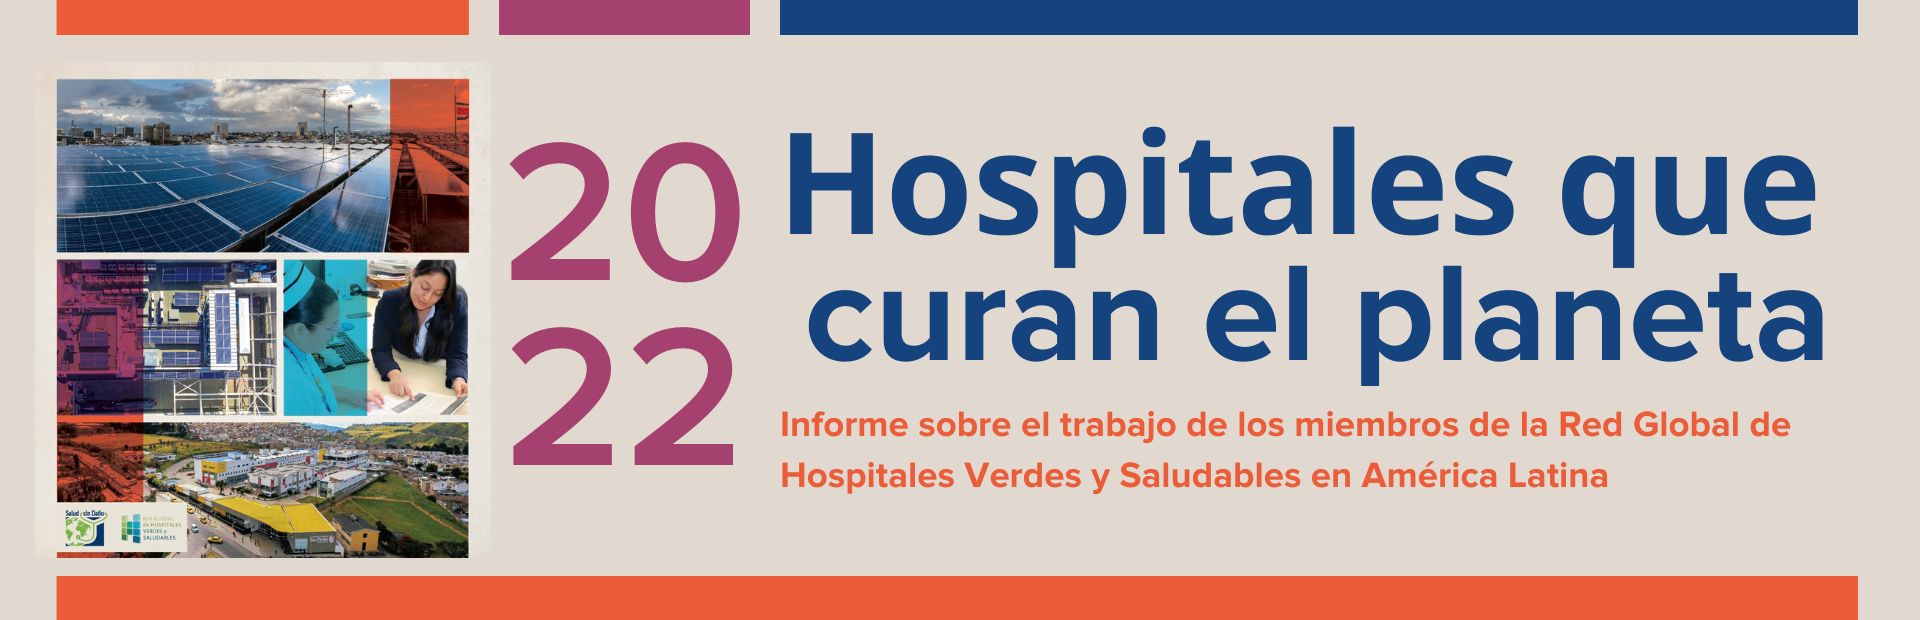 Esta imagen contiene el título del informe Hospitales que curan el planeta 2022 y los logos de Salud sin Daño y de la Red Global de Hospitales Verdes y Saludables.